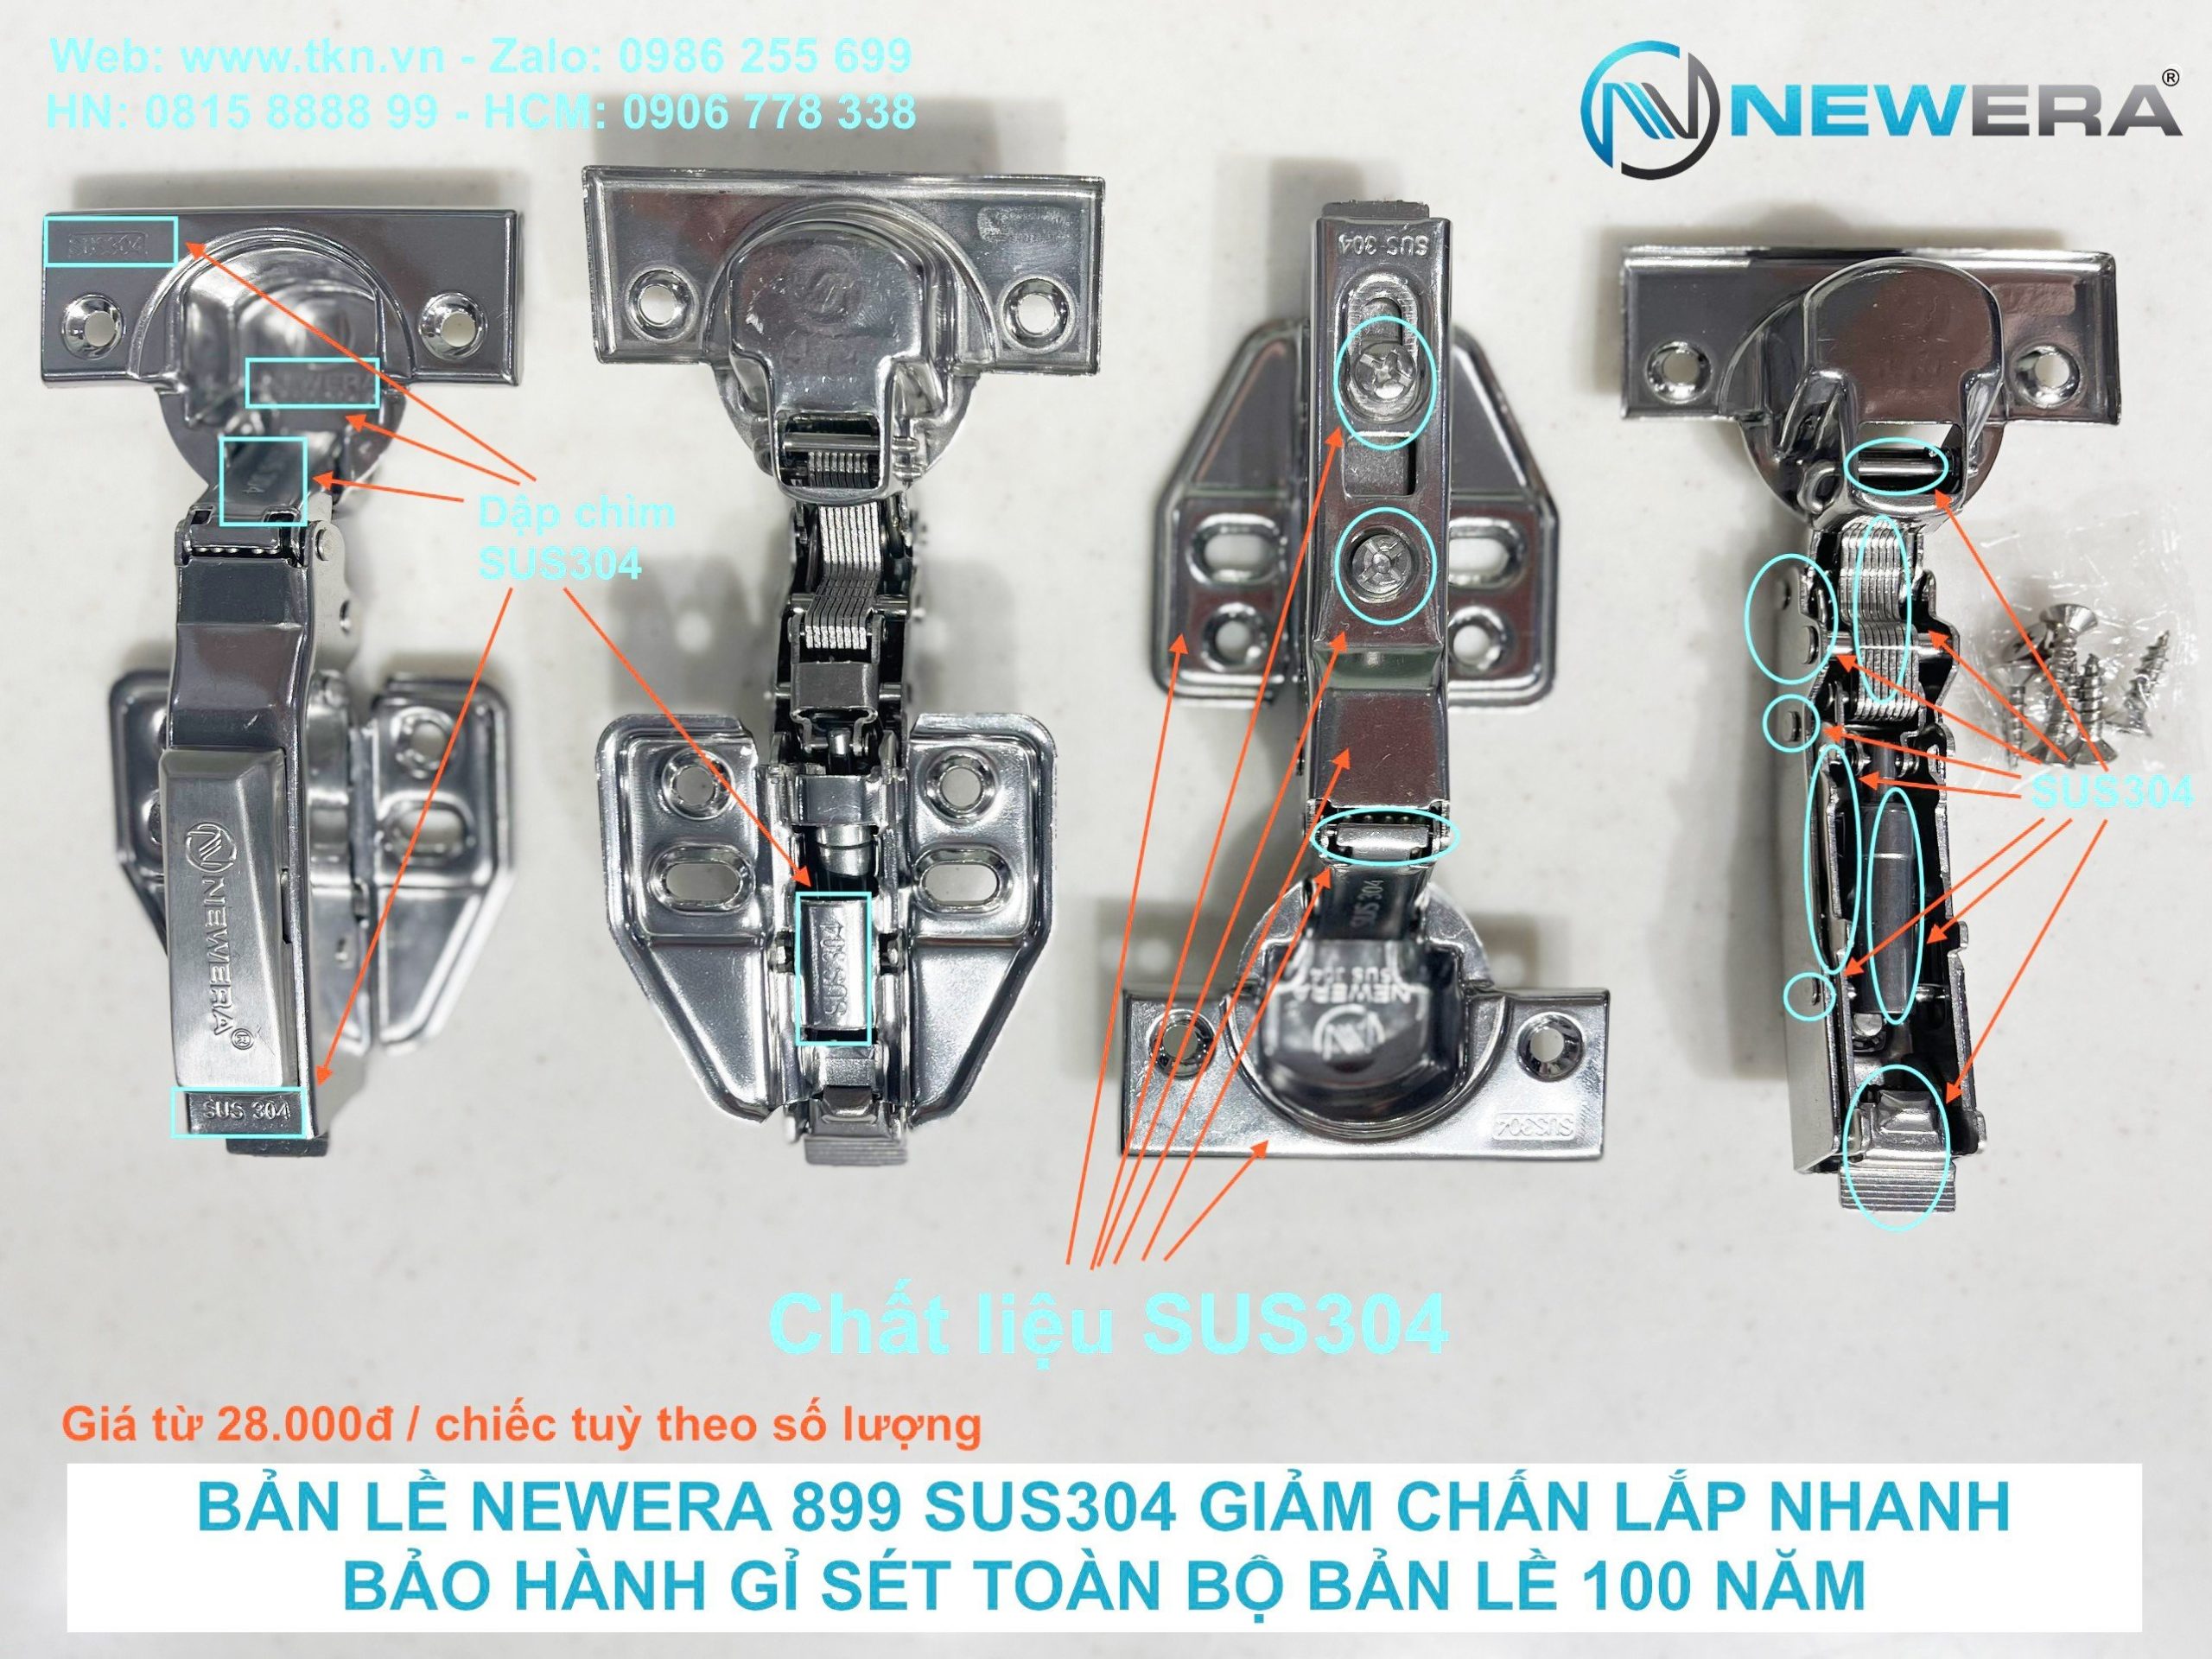 Bản lề tủ bếp NewEra mã 899C được sản xuất dây chuyên công nghệ cao